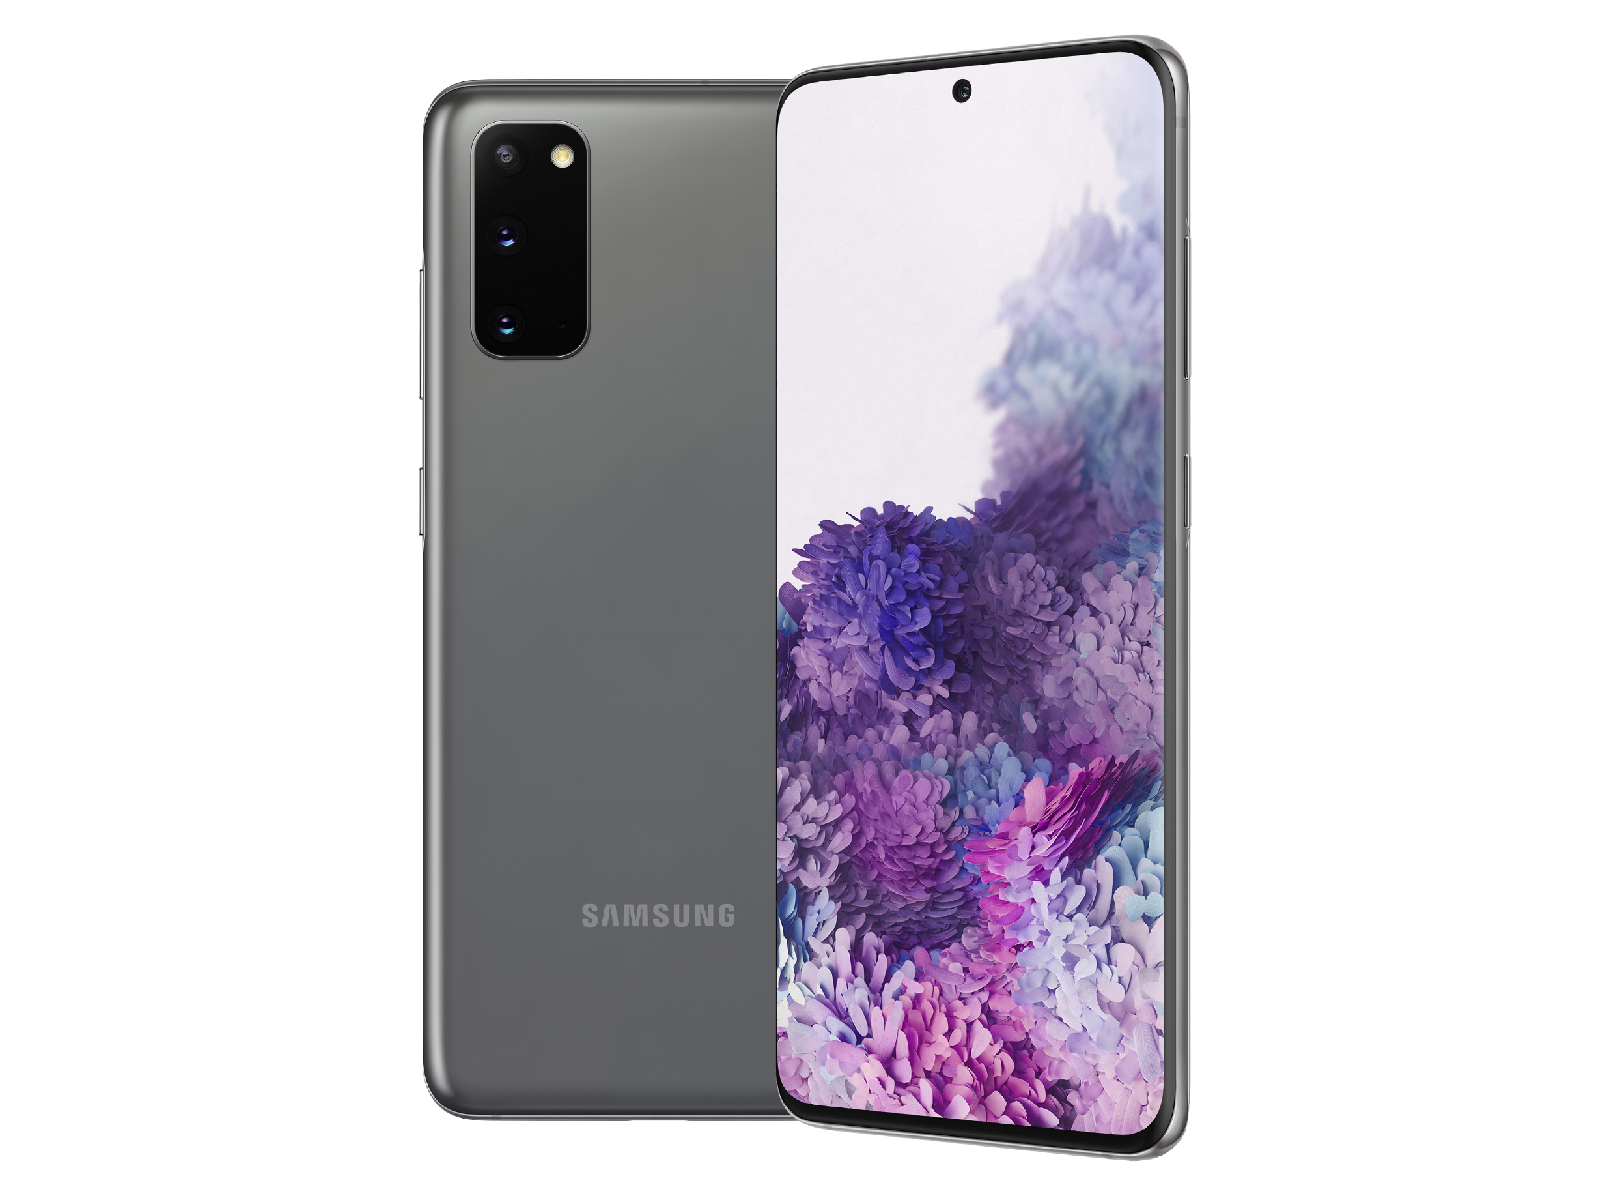 Samsung Galaxy S20 -  External Reviews